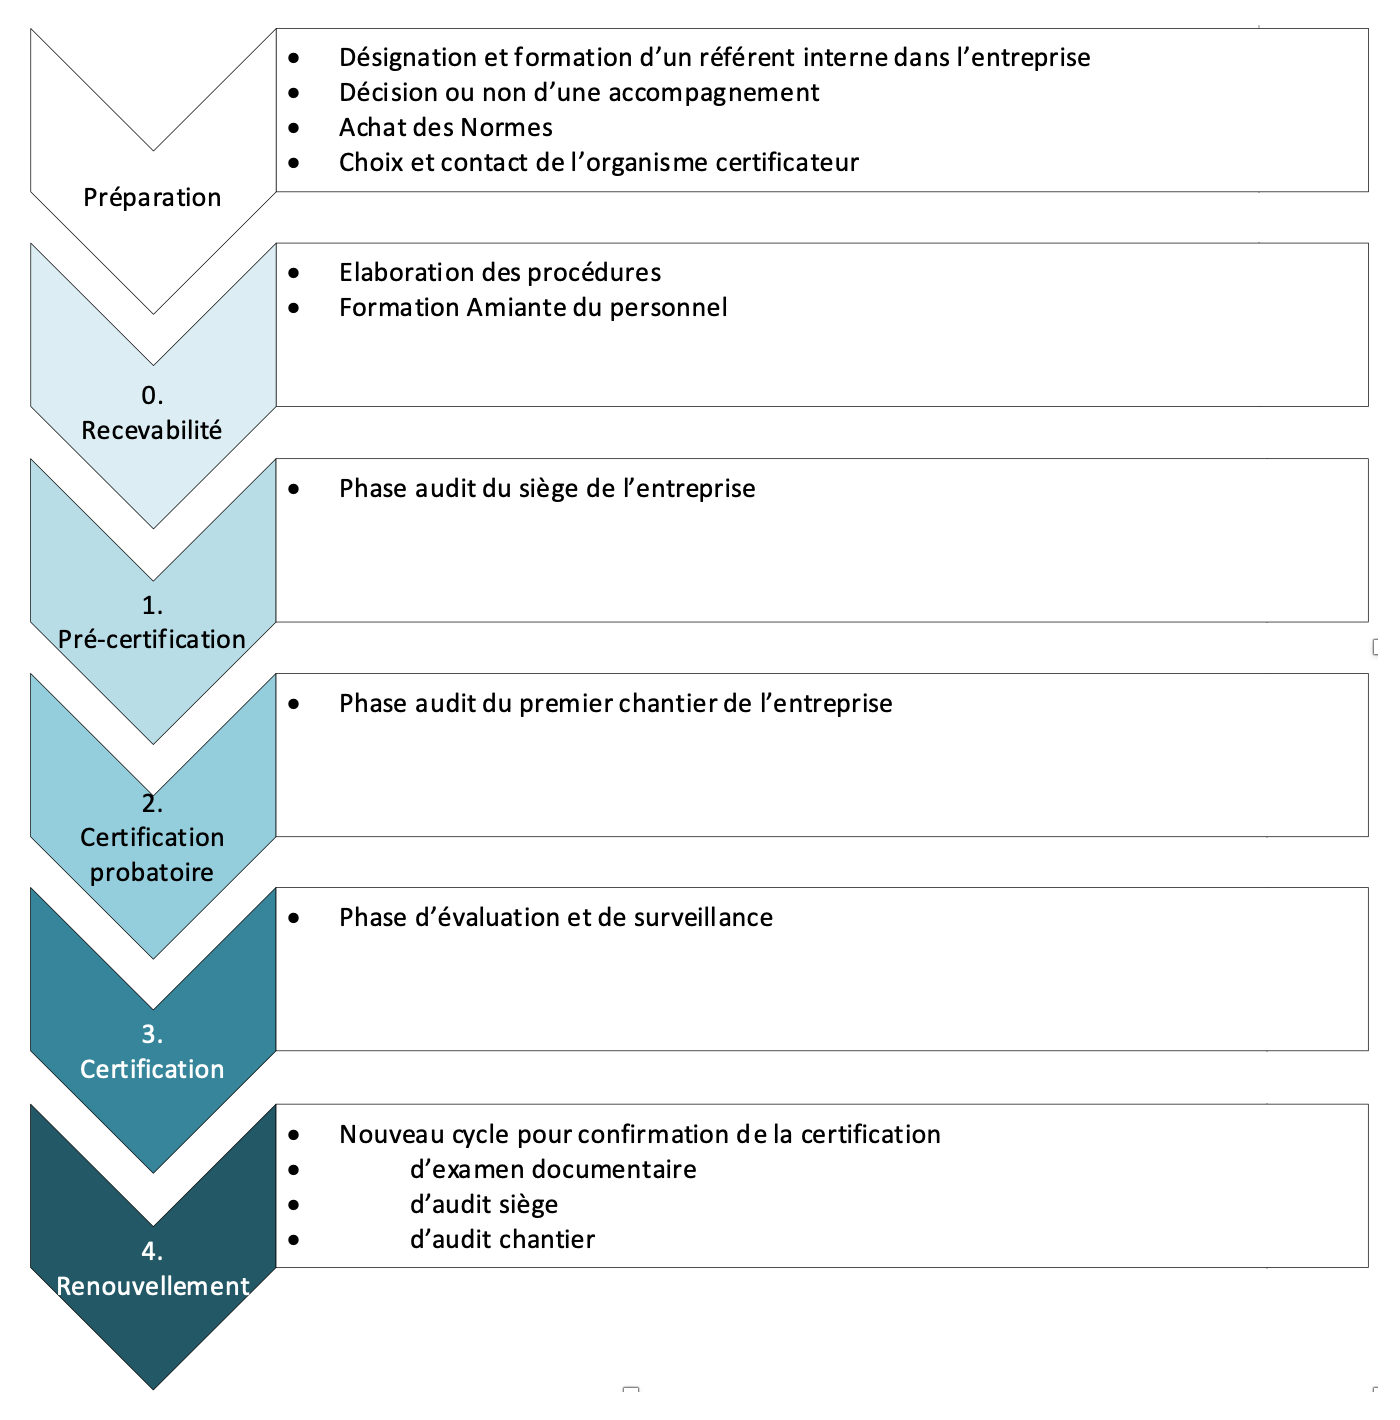 Synoptique simplifié des étapes de la démarche de certification des entreprises de désamiantage